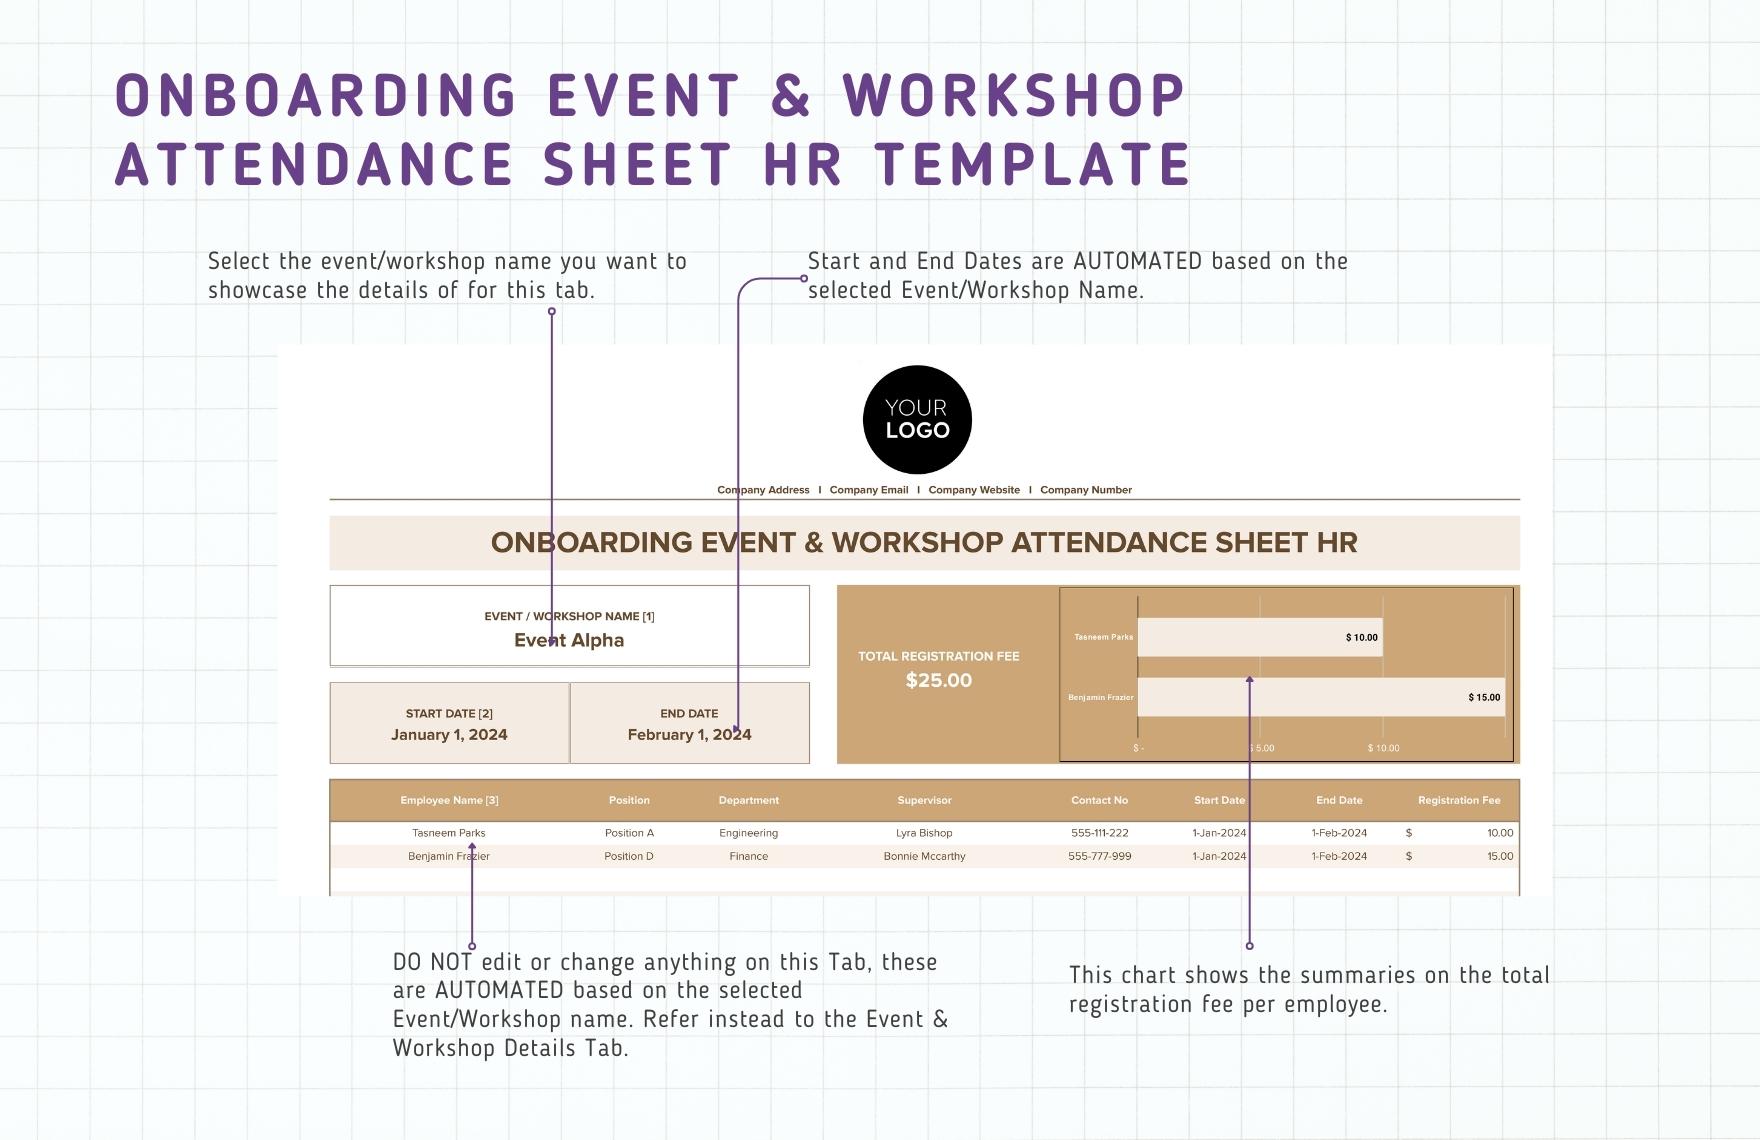 Onboarding Event & Workshop Attendance Sheet HR Template